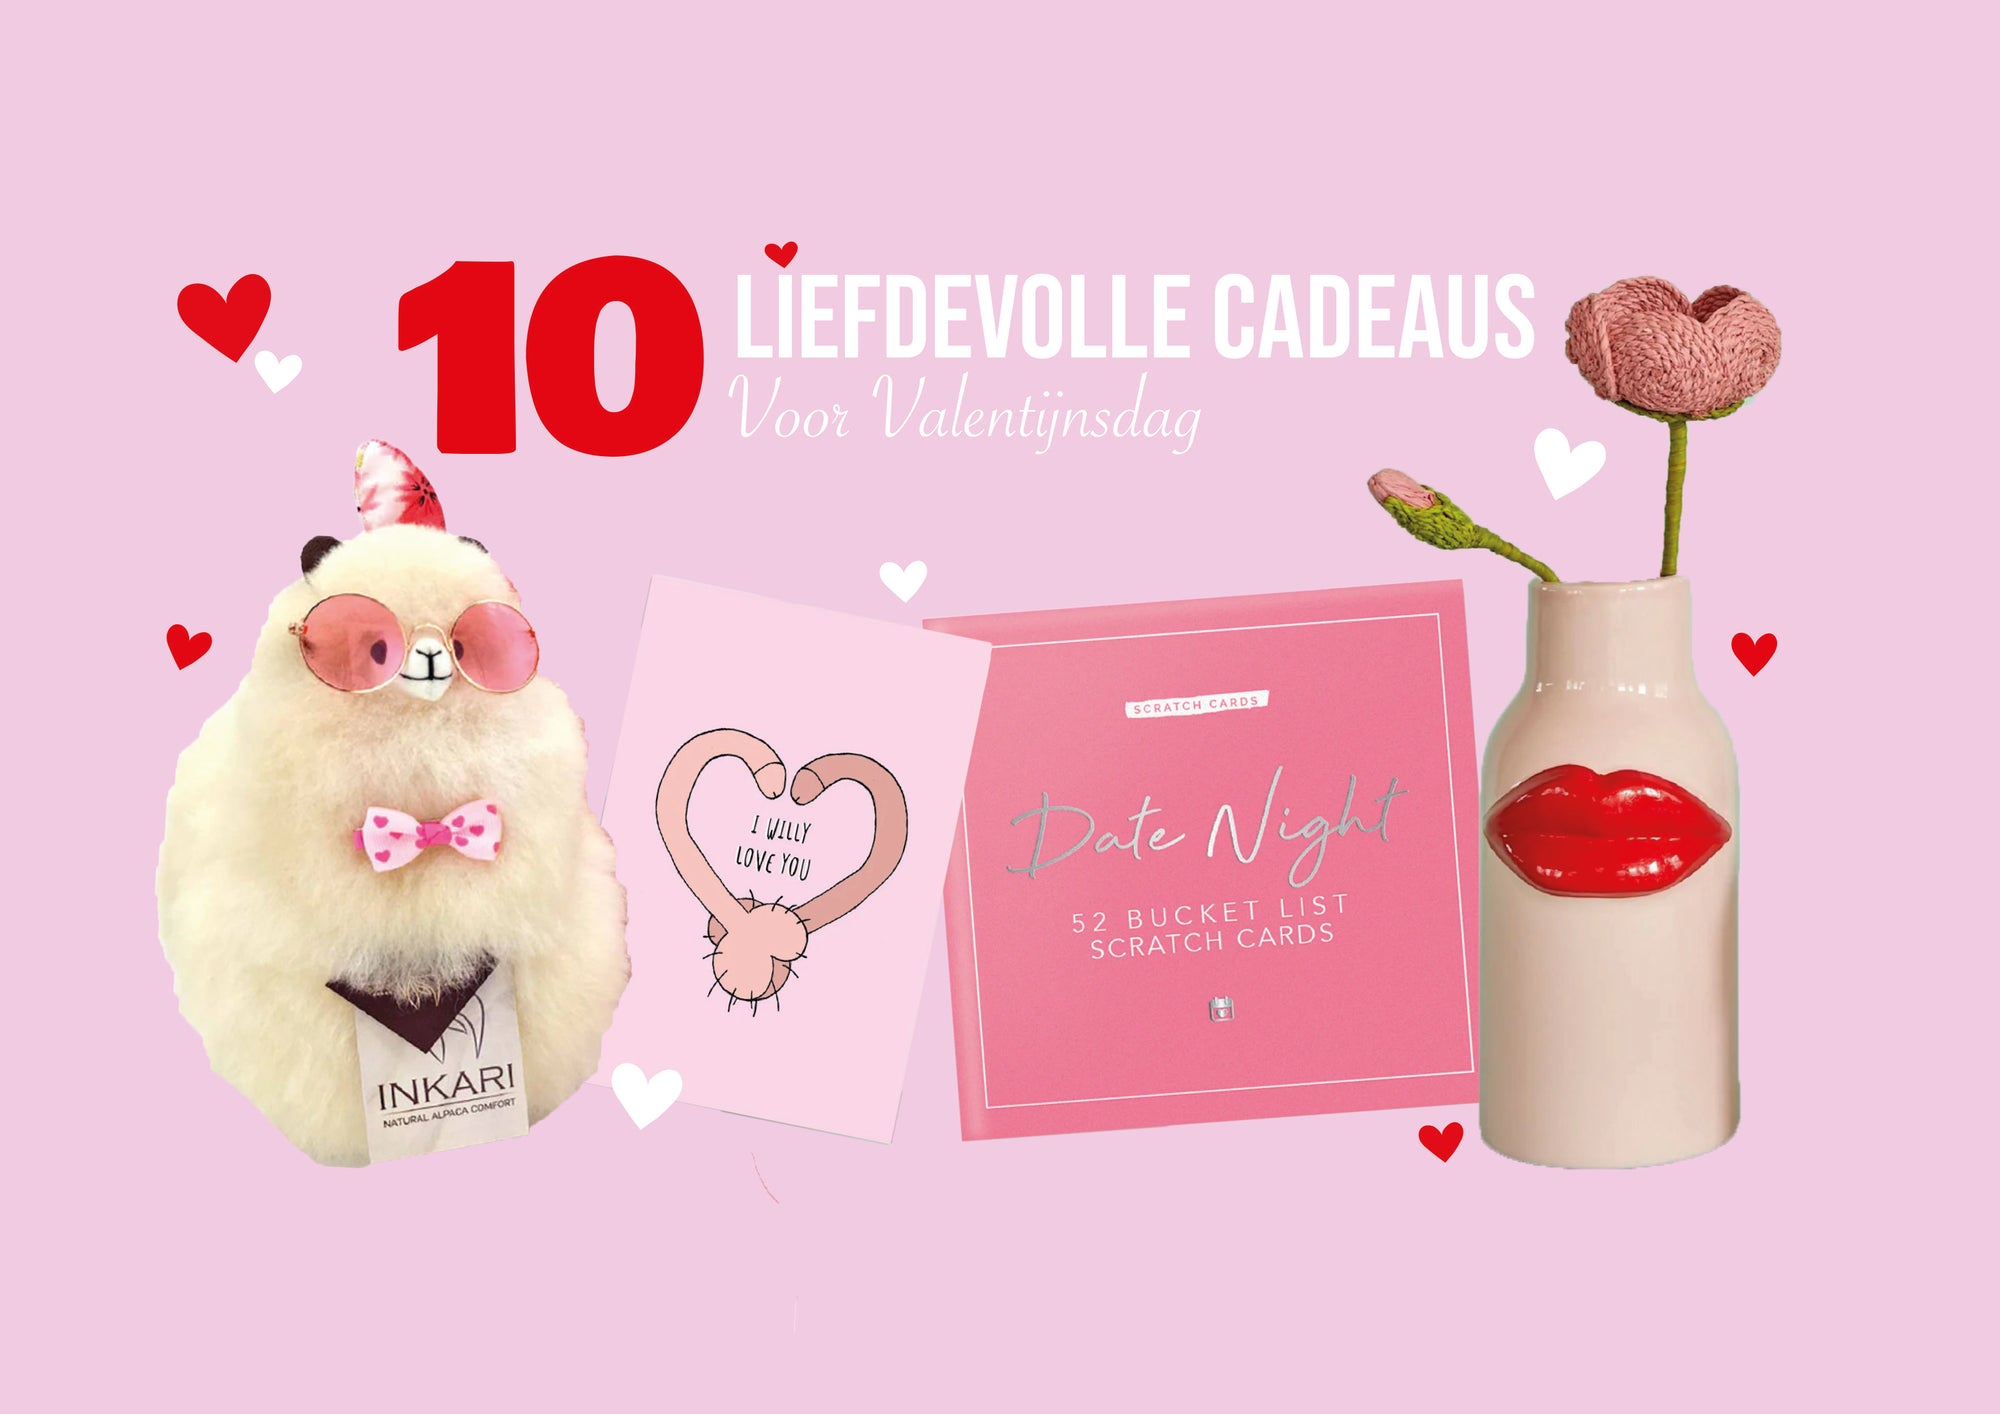 10 Liefdevolle Cadeaus voor Valentijnsdag